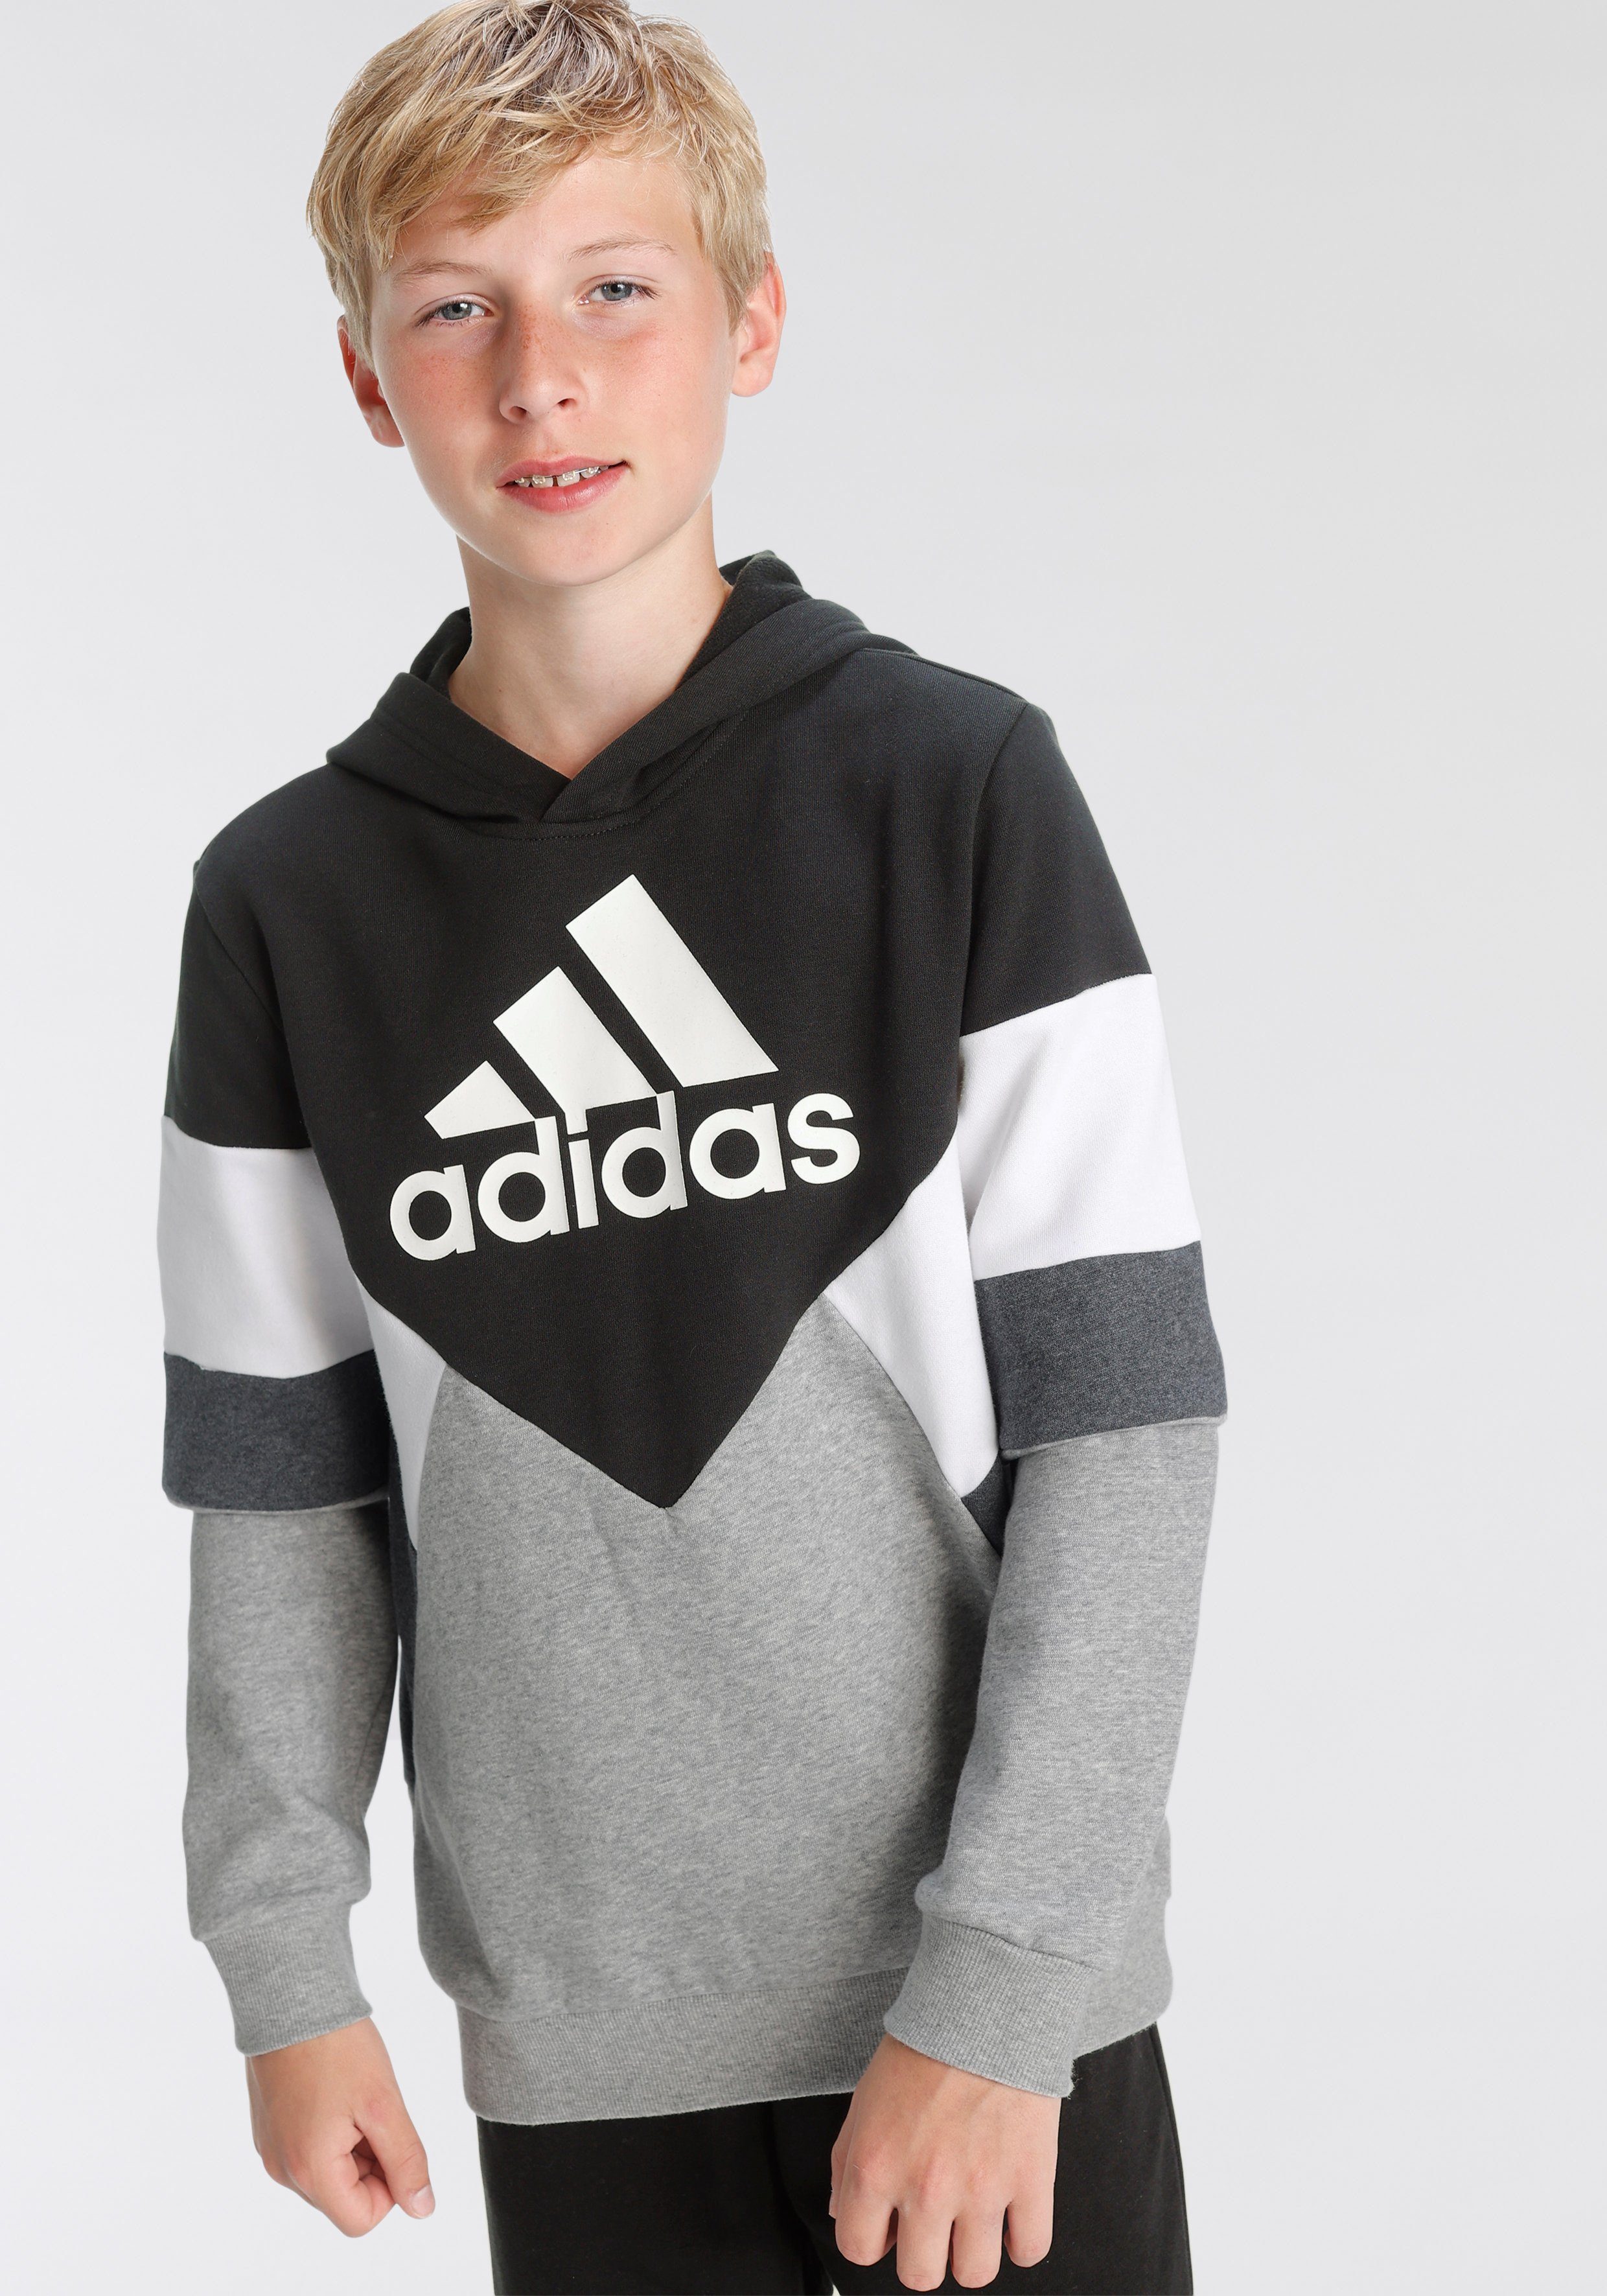 adidas Jungen Sweatshirts online kaufen | OTTO